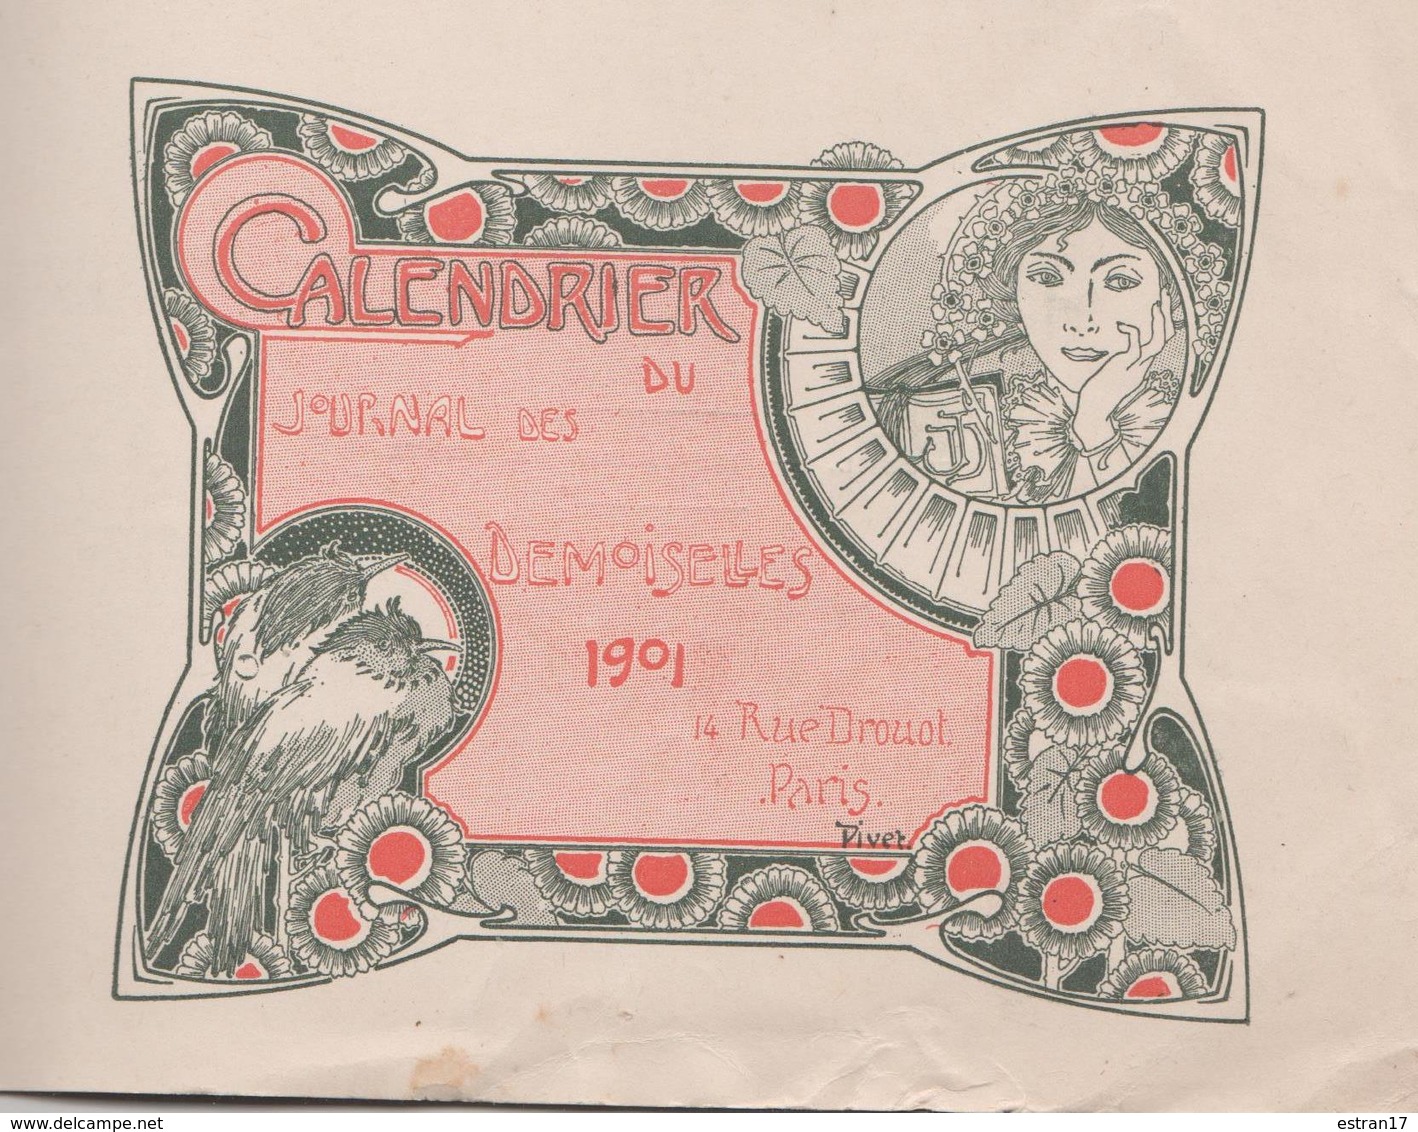 1901 CALENDRIER DU JOURNAL DES DEMOISELLES 14 RUE DROUOT PARIS - Groot Formaat: 1901-20